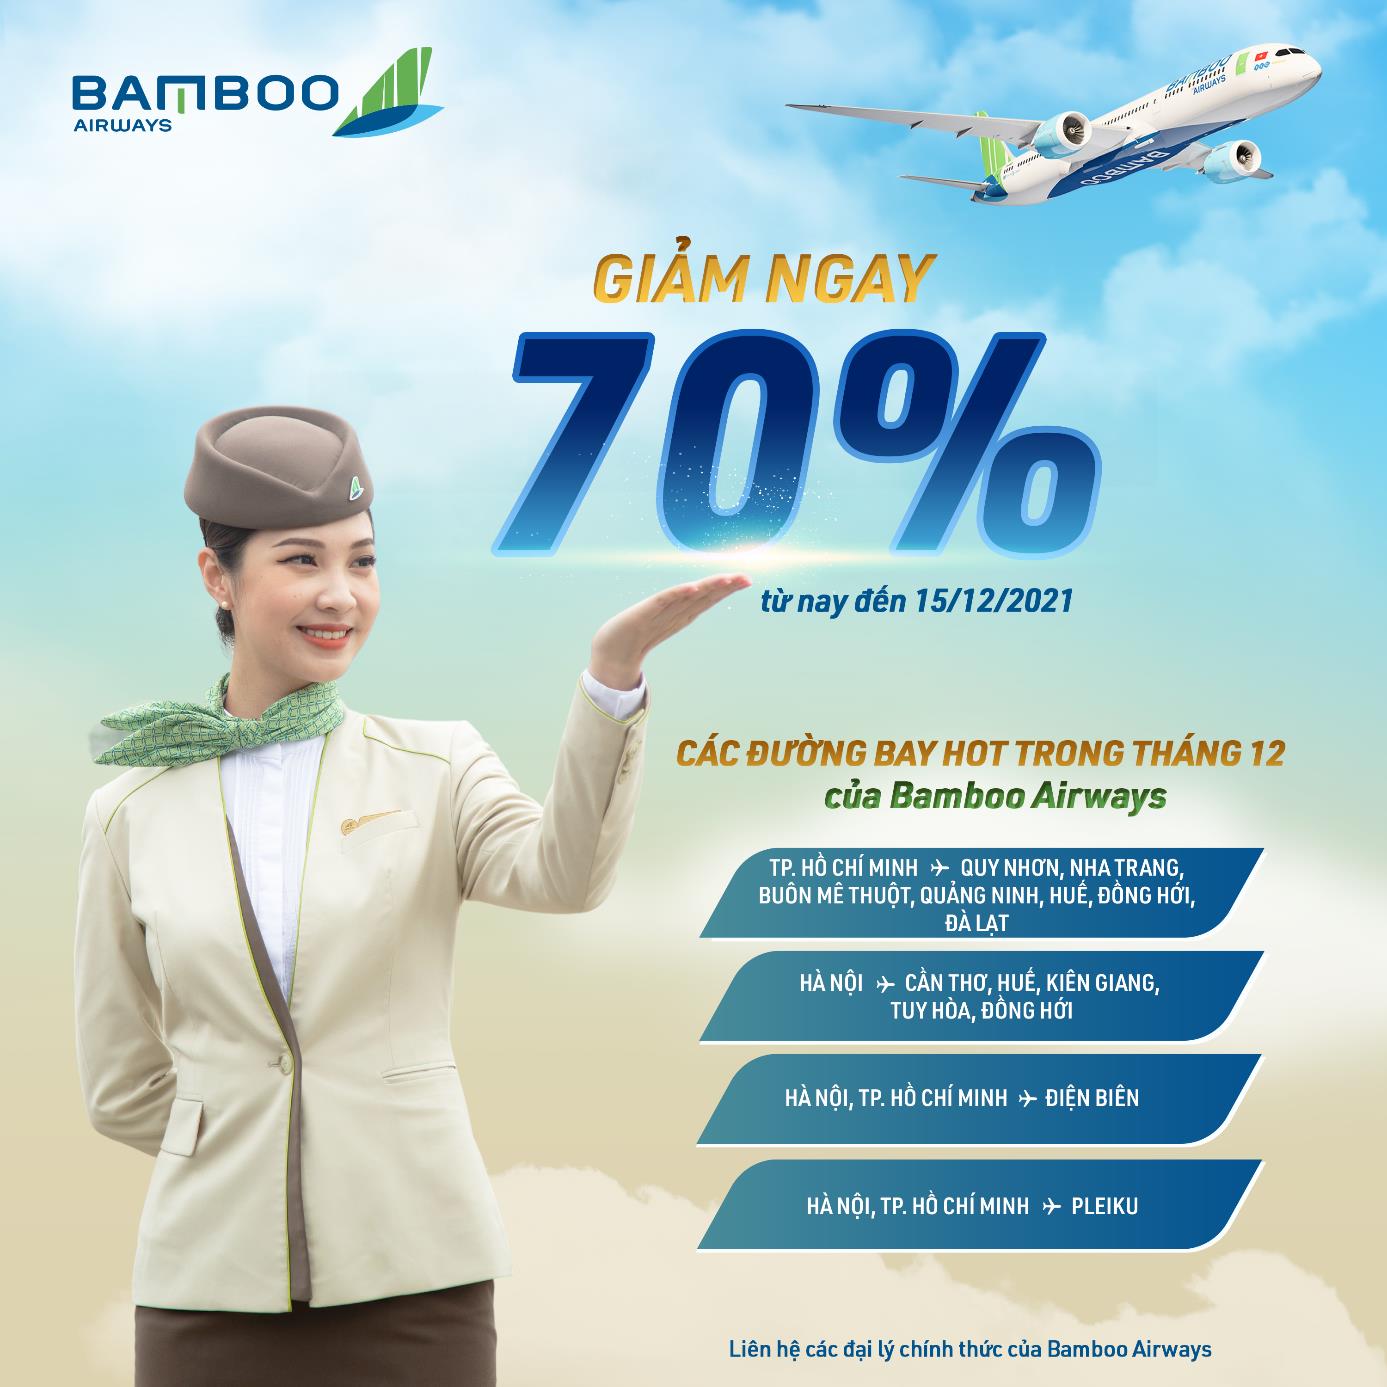 Tri ân cuối năm, Bamboo Airways giảm ngay 70% giá vé các đường bay ‘hot’ - Ảnh 1.